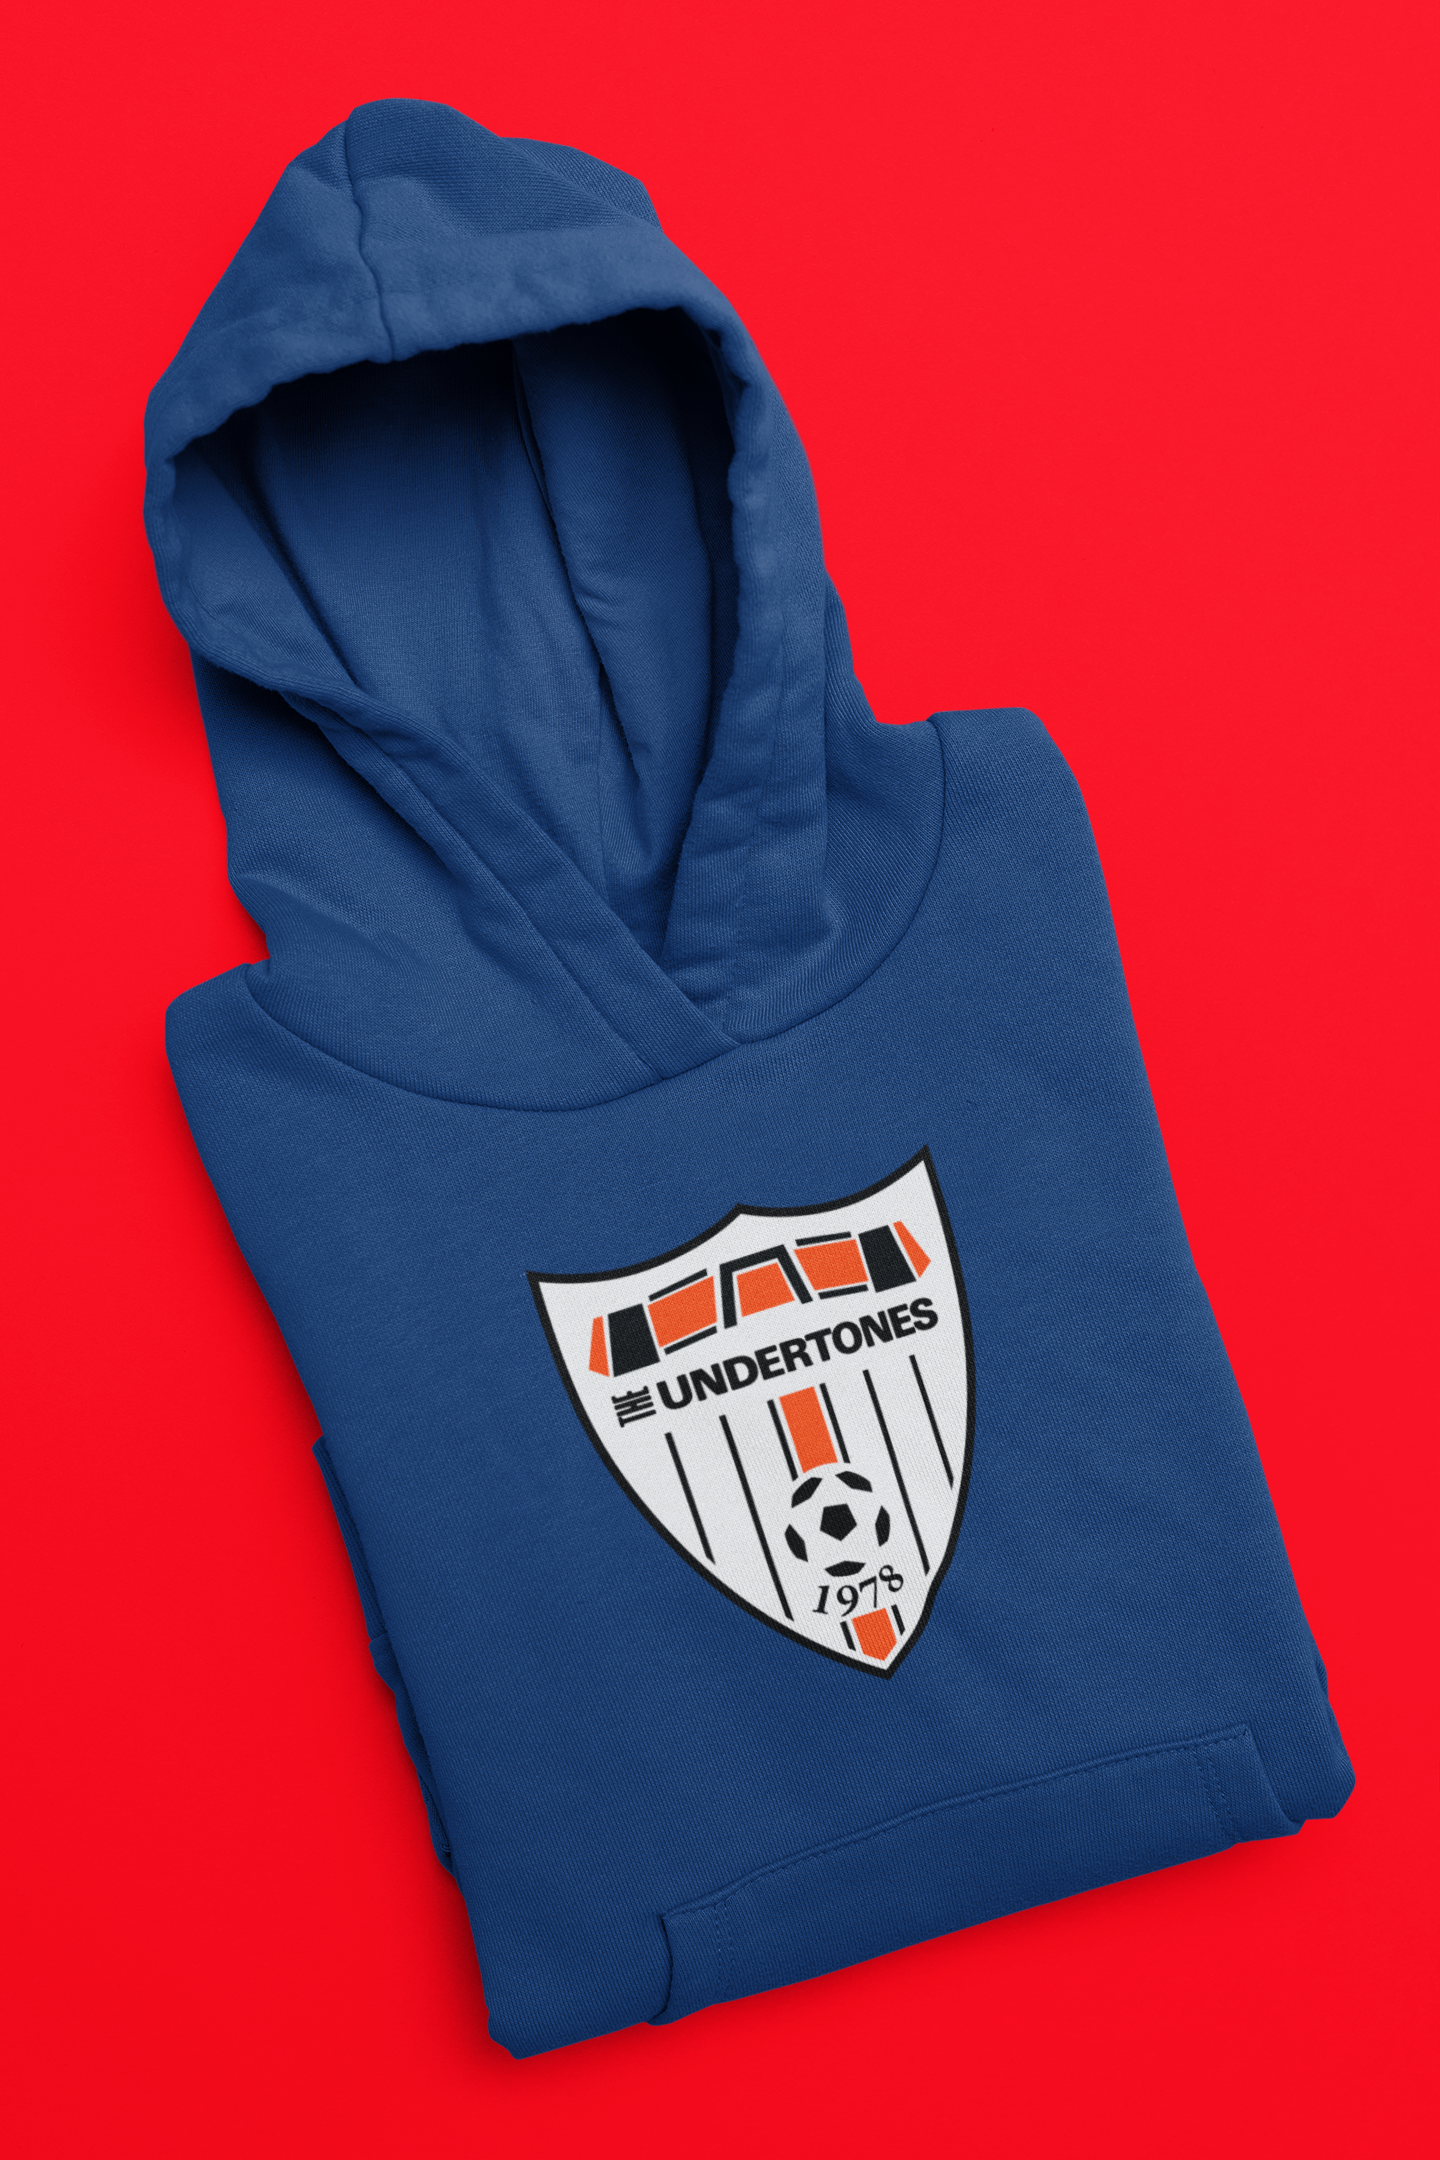 DCFC/ Undertones Logo Sweatshirt/ Hoodie